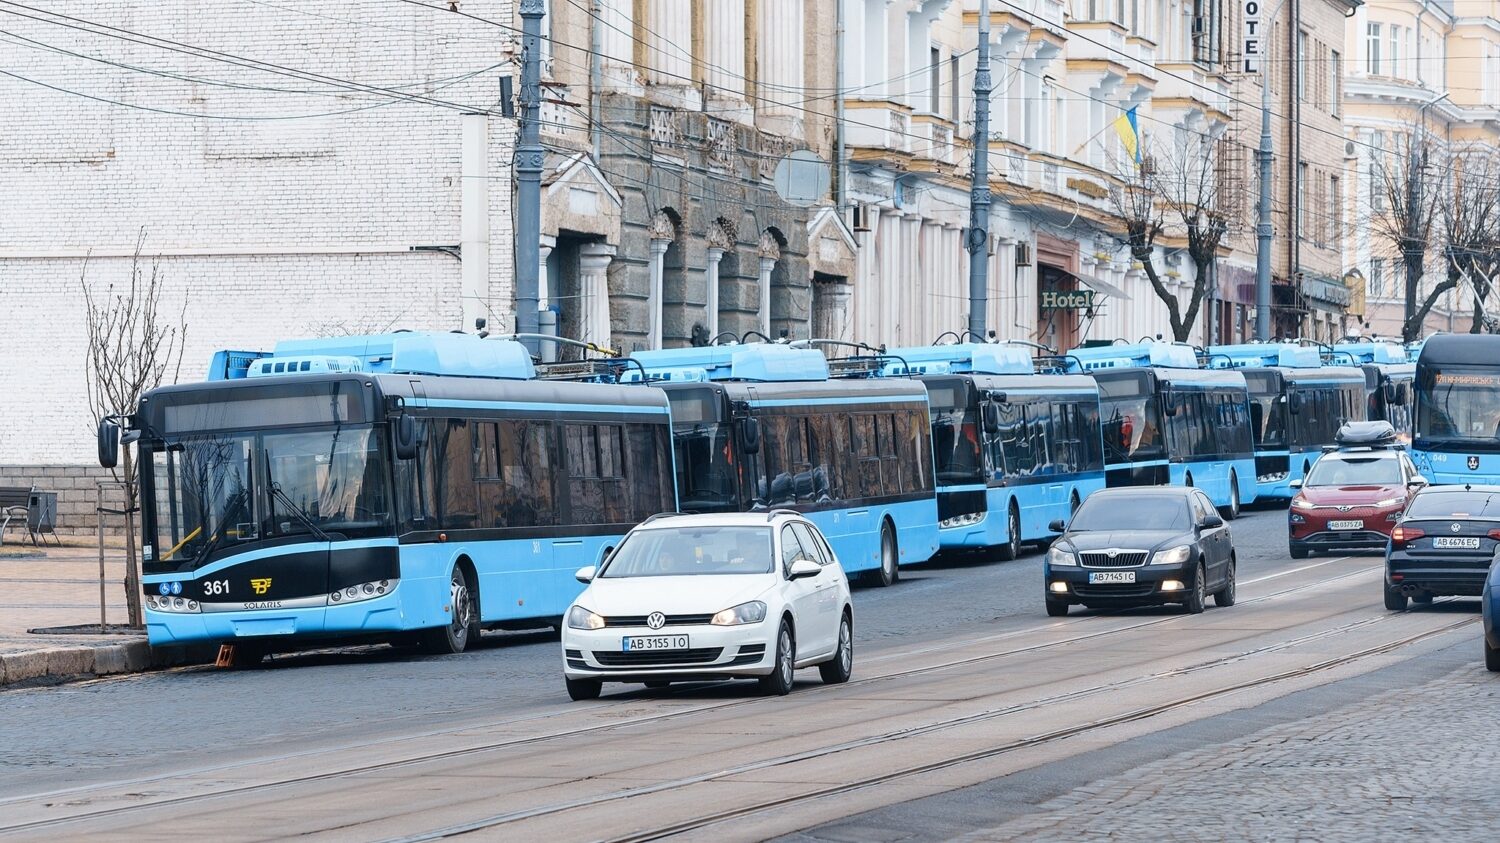 Přelakované trolejbusy Trollino 12 seřazené v rámci prezentace novinářům. (foto: město Vinnycja)